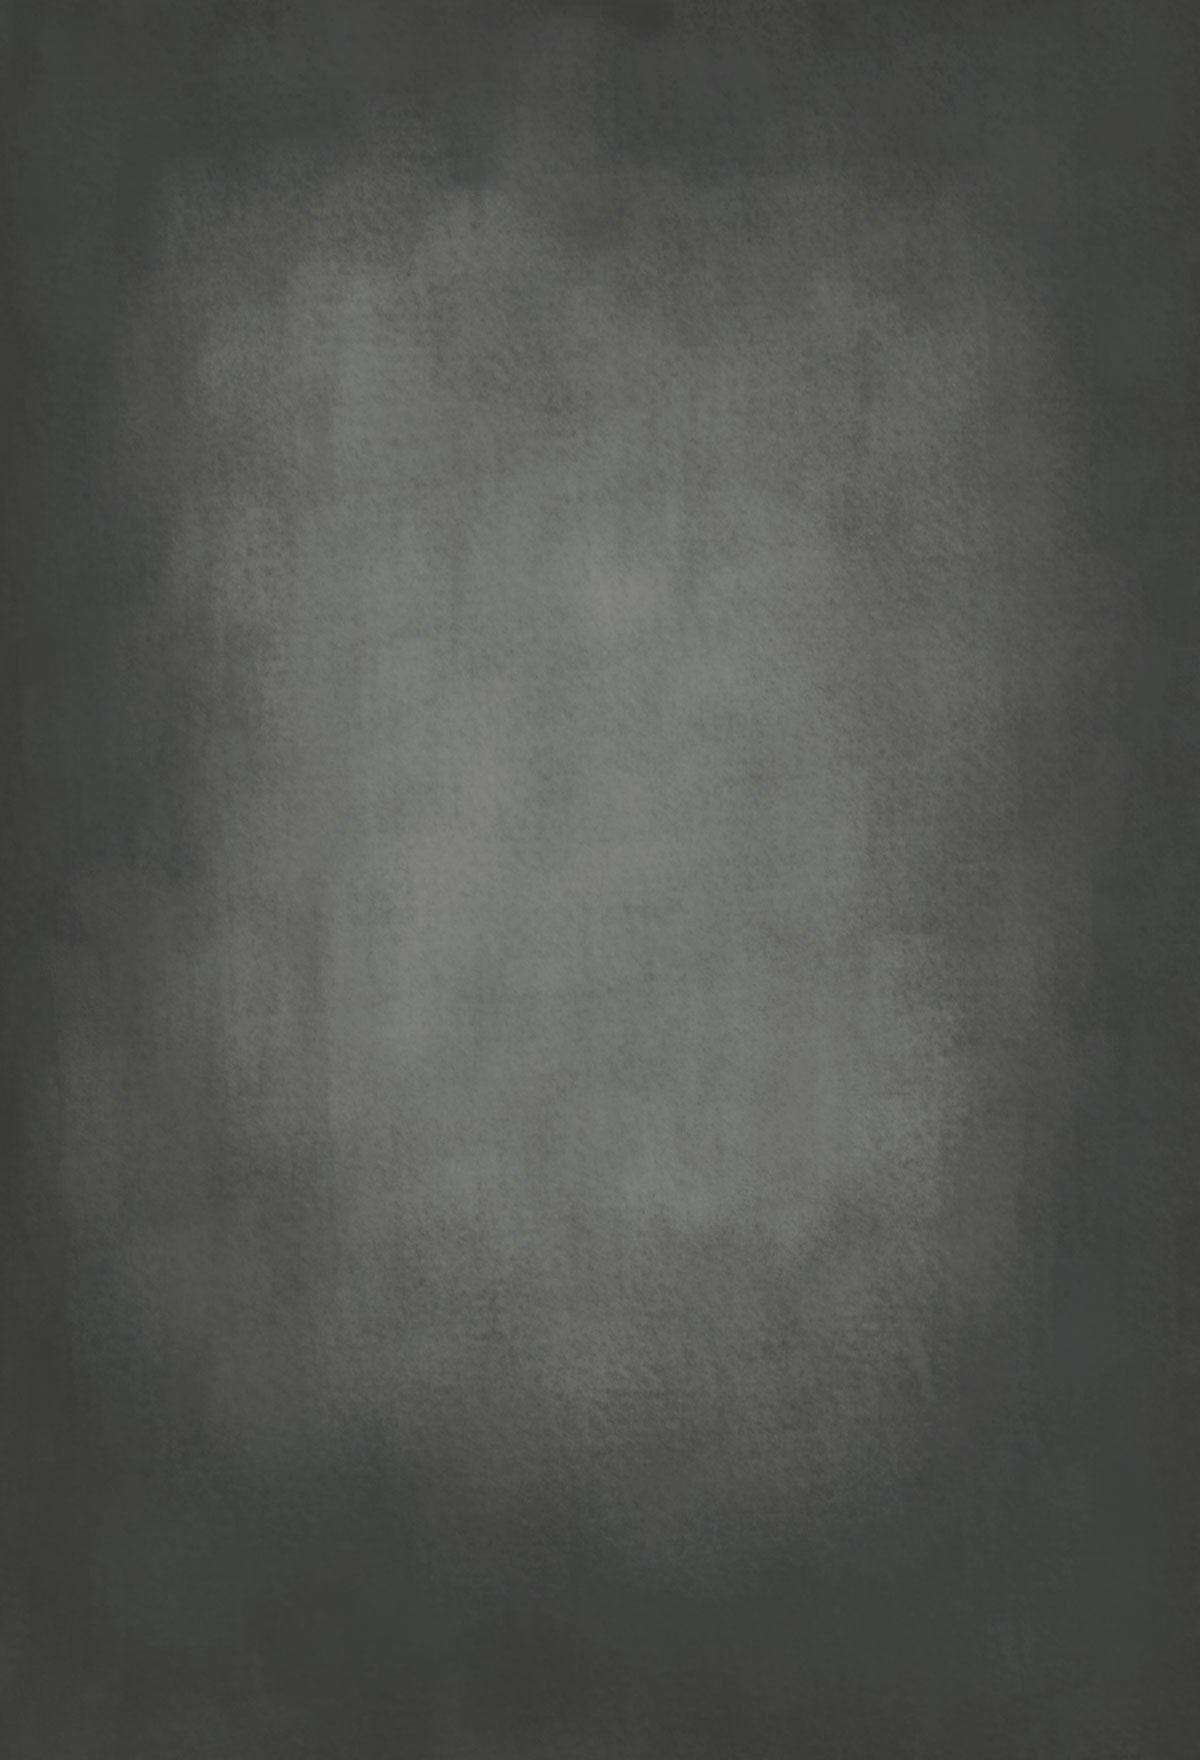 Kate Kaltes Hell Grau Texture Oliphant wie Hintergrund